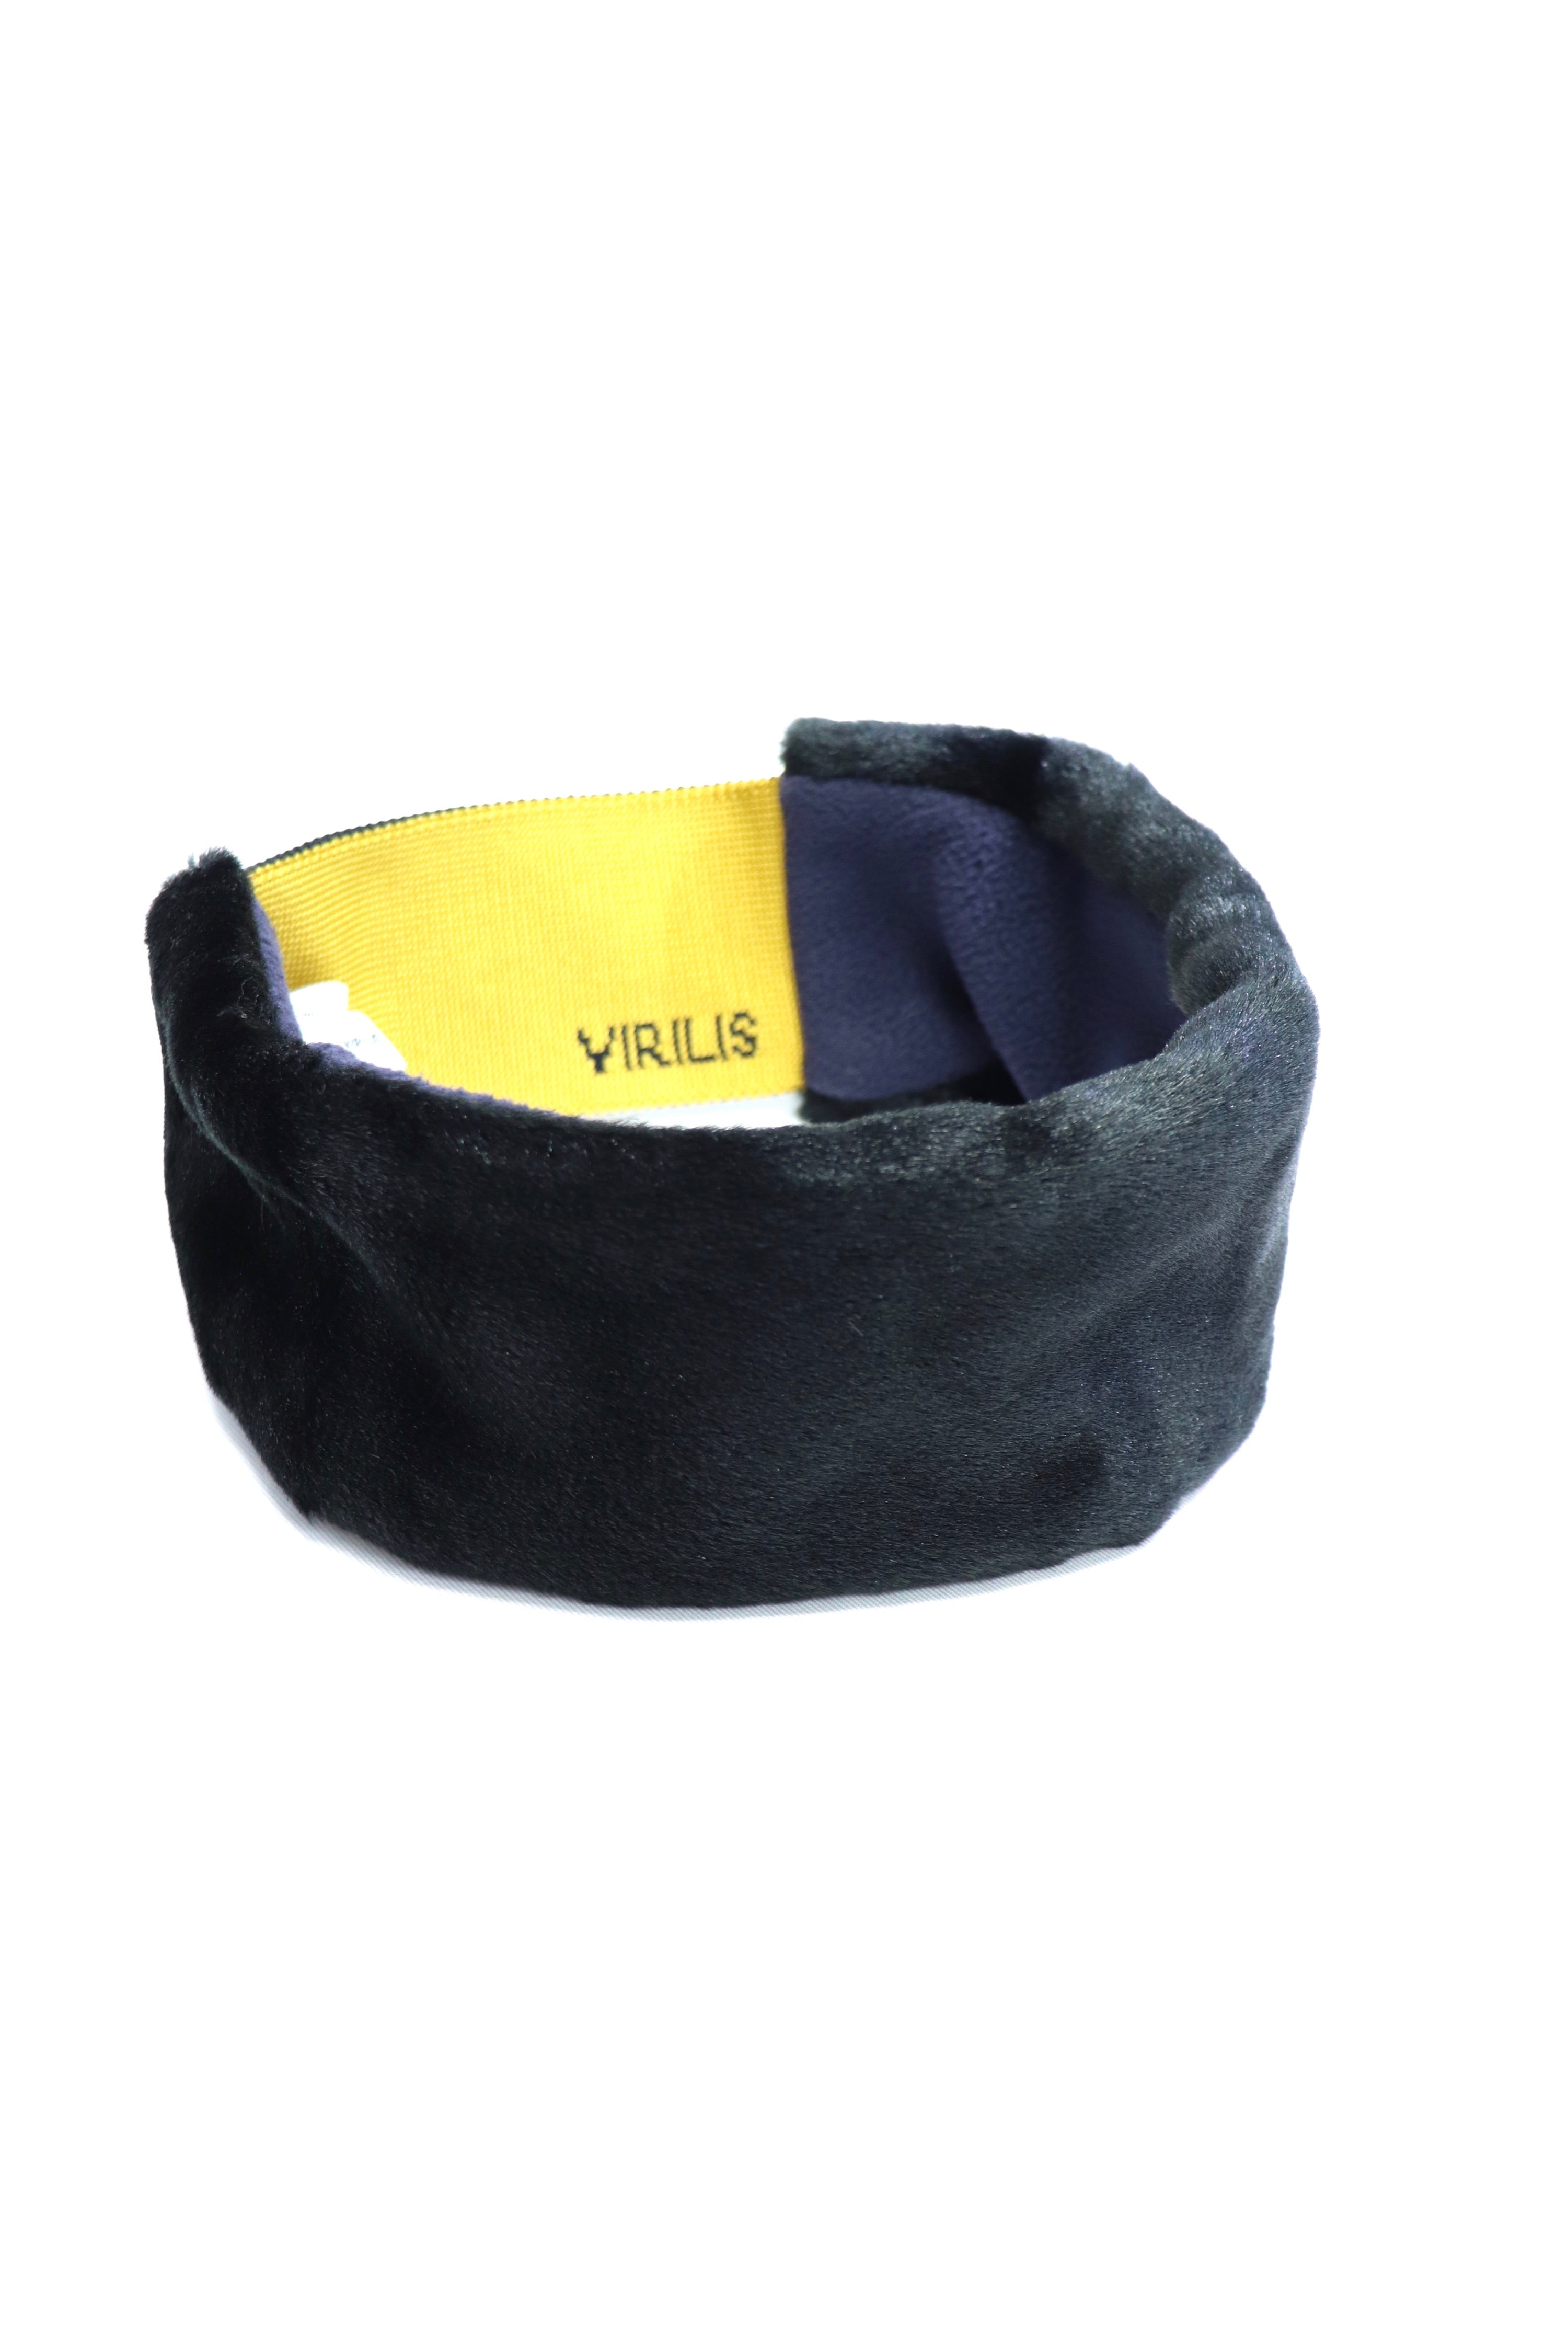 TOGA VIRILIS(トーガ ビリリース)のFake fur hand accessory